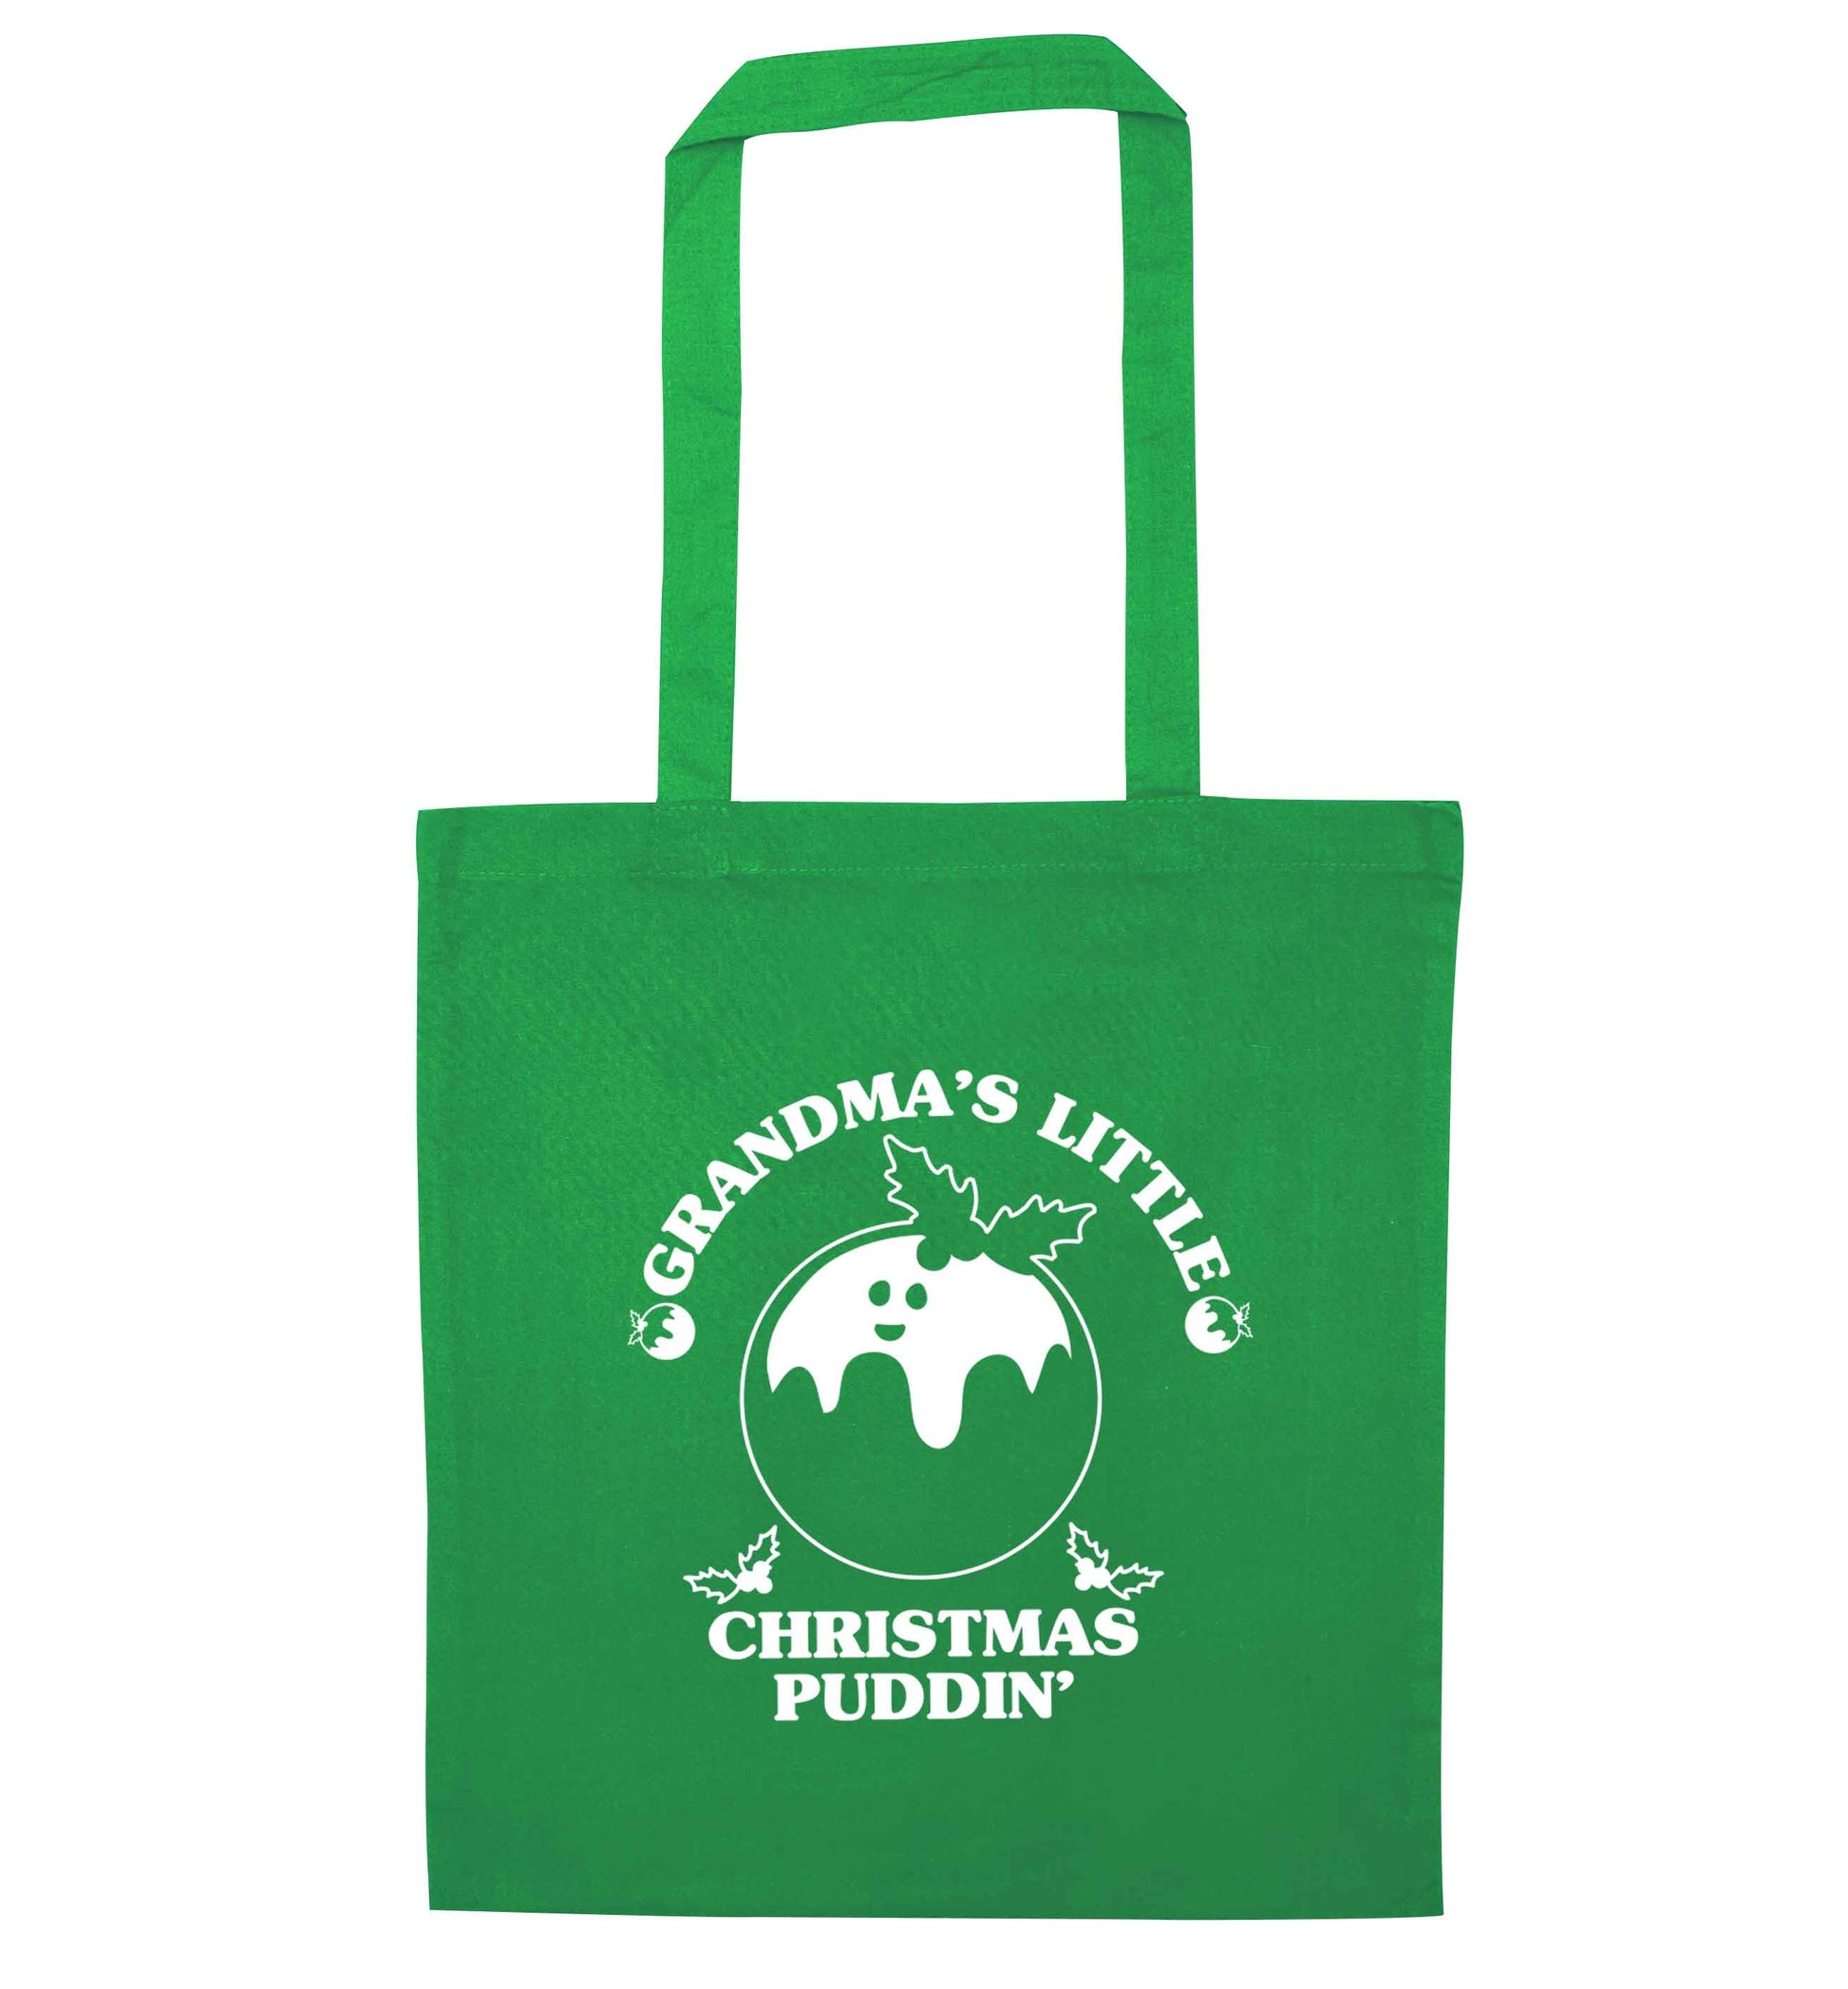 Grandma's little Christmas puddin' green tote bag